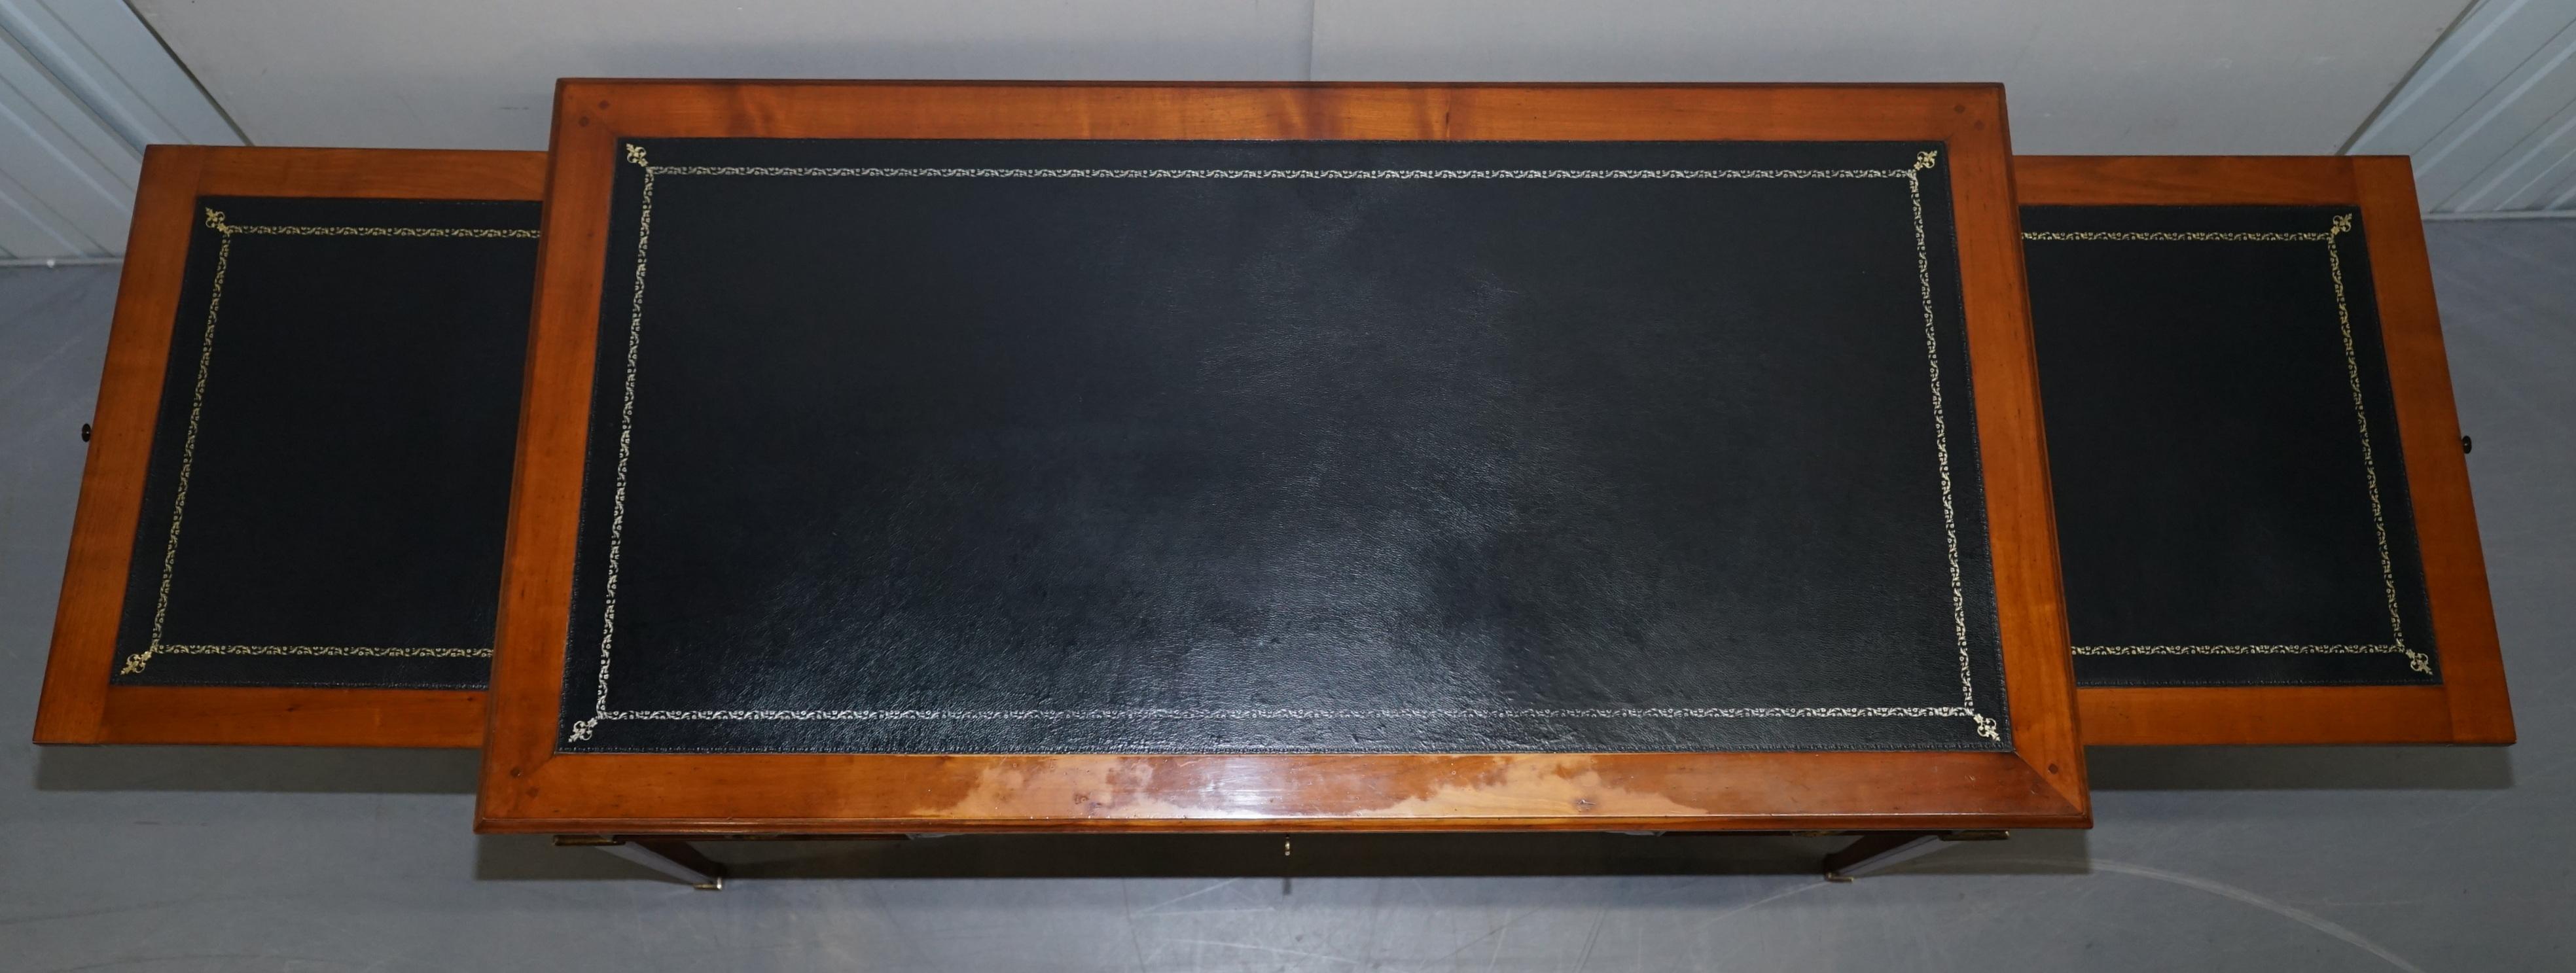 Vintage Fruitwood Leather Topped Extending Bureau De Plat Desk Writing Table 10